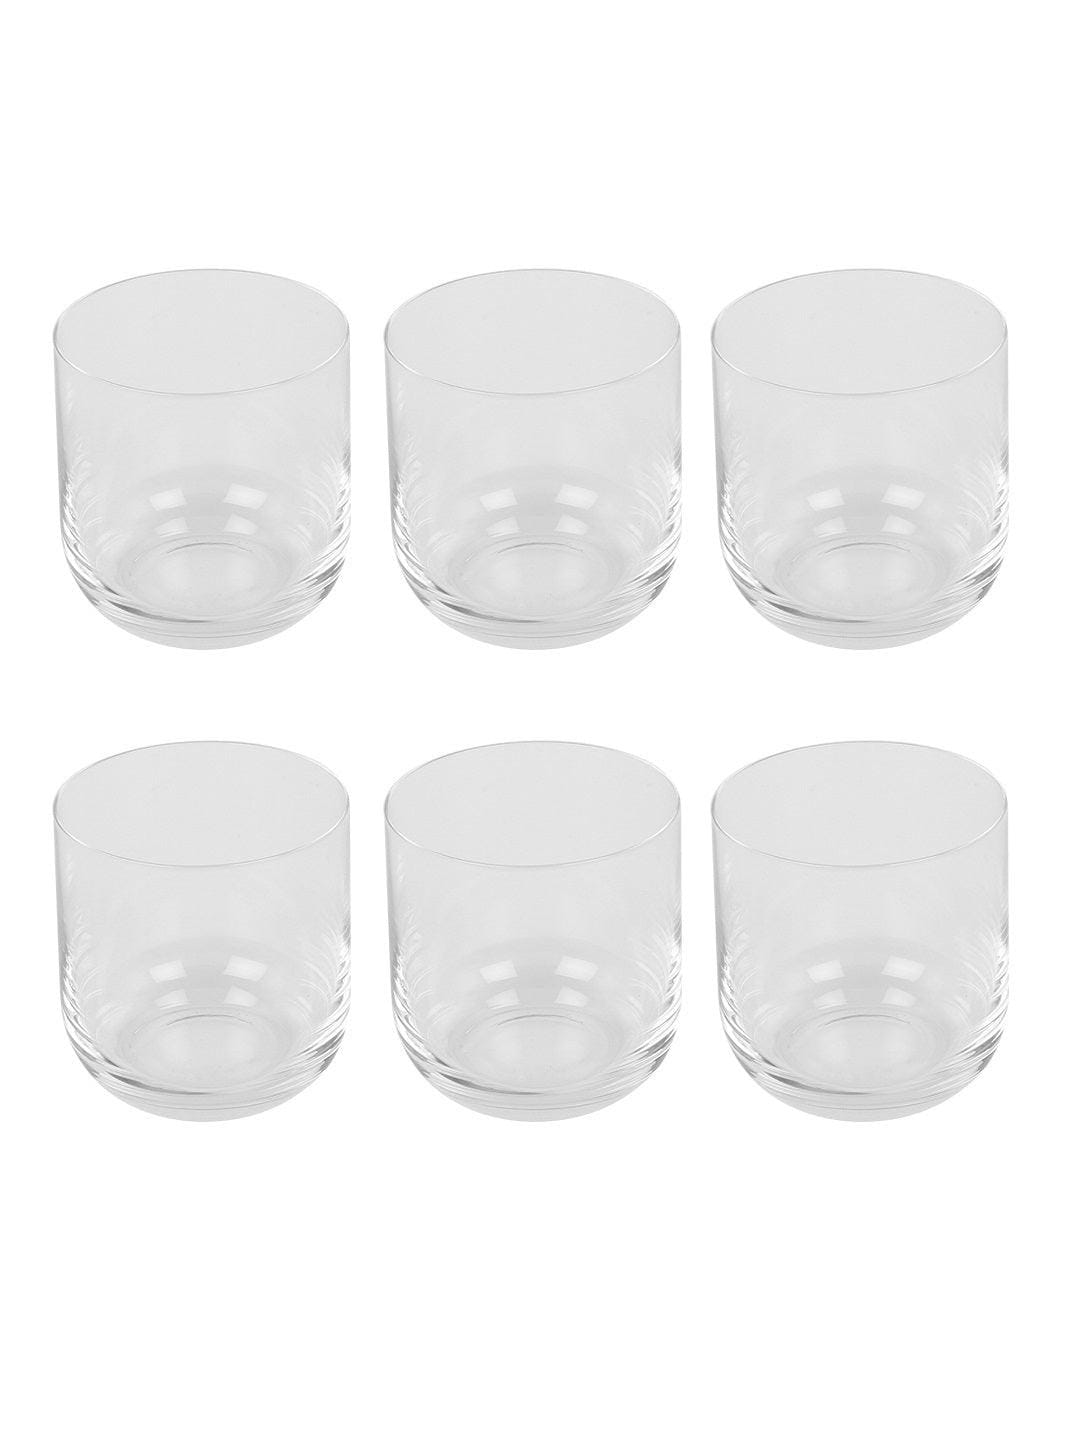 Whiskey glass set - Bohemia Crystal Uma 330 ML Set of 6 pcs | Whiskey Glass